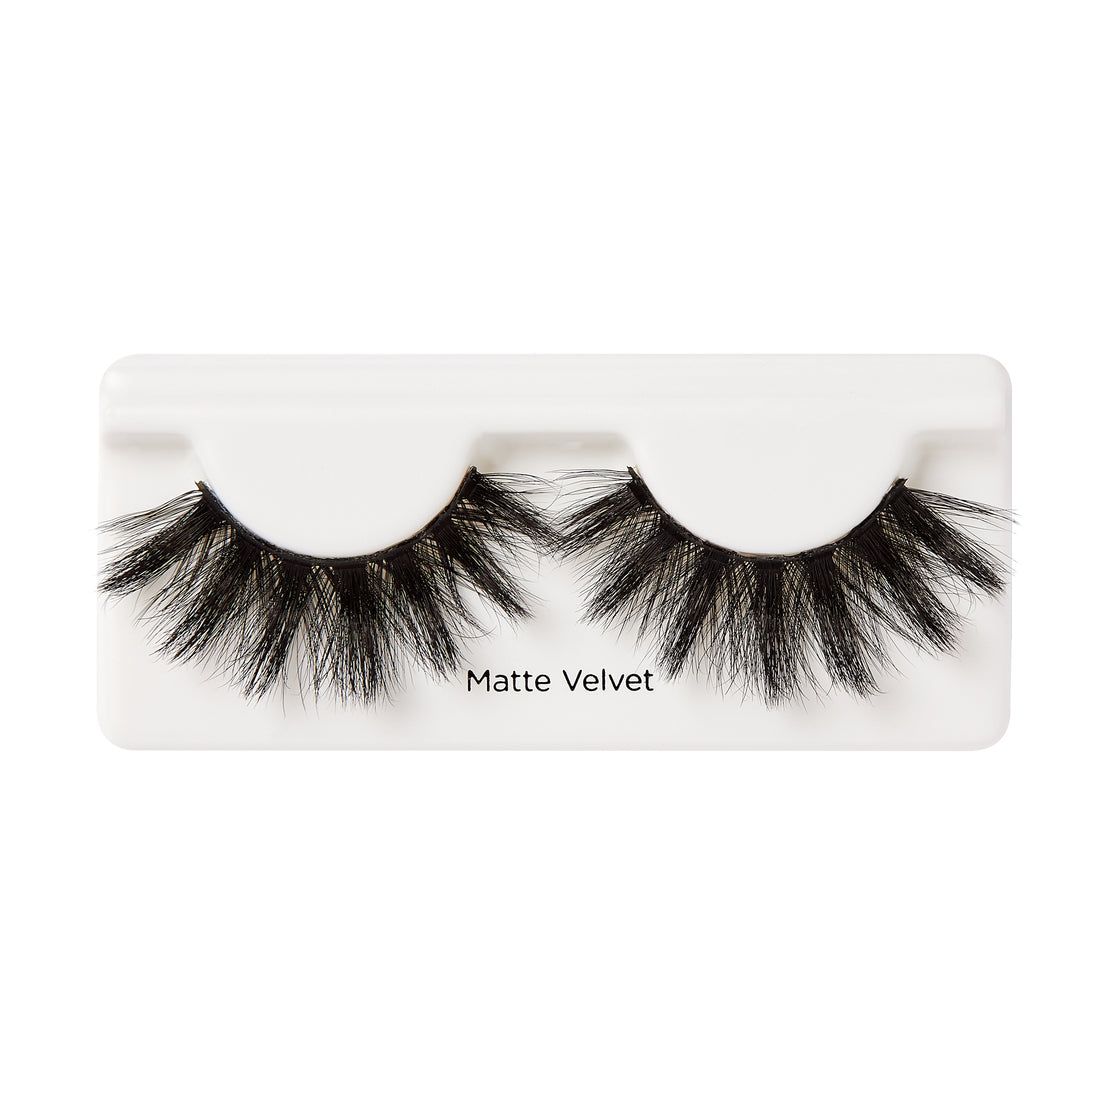 KISS Lash Couture Matte Black Faux Mink Collection Fake Eyelashes, ‘Matte Velvet’ - 1 Pair